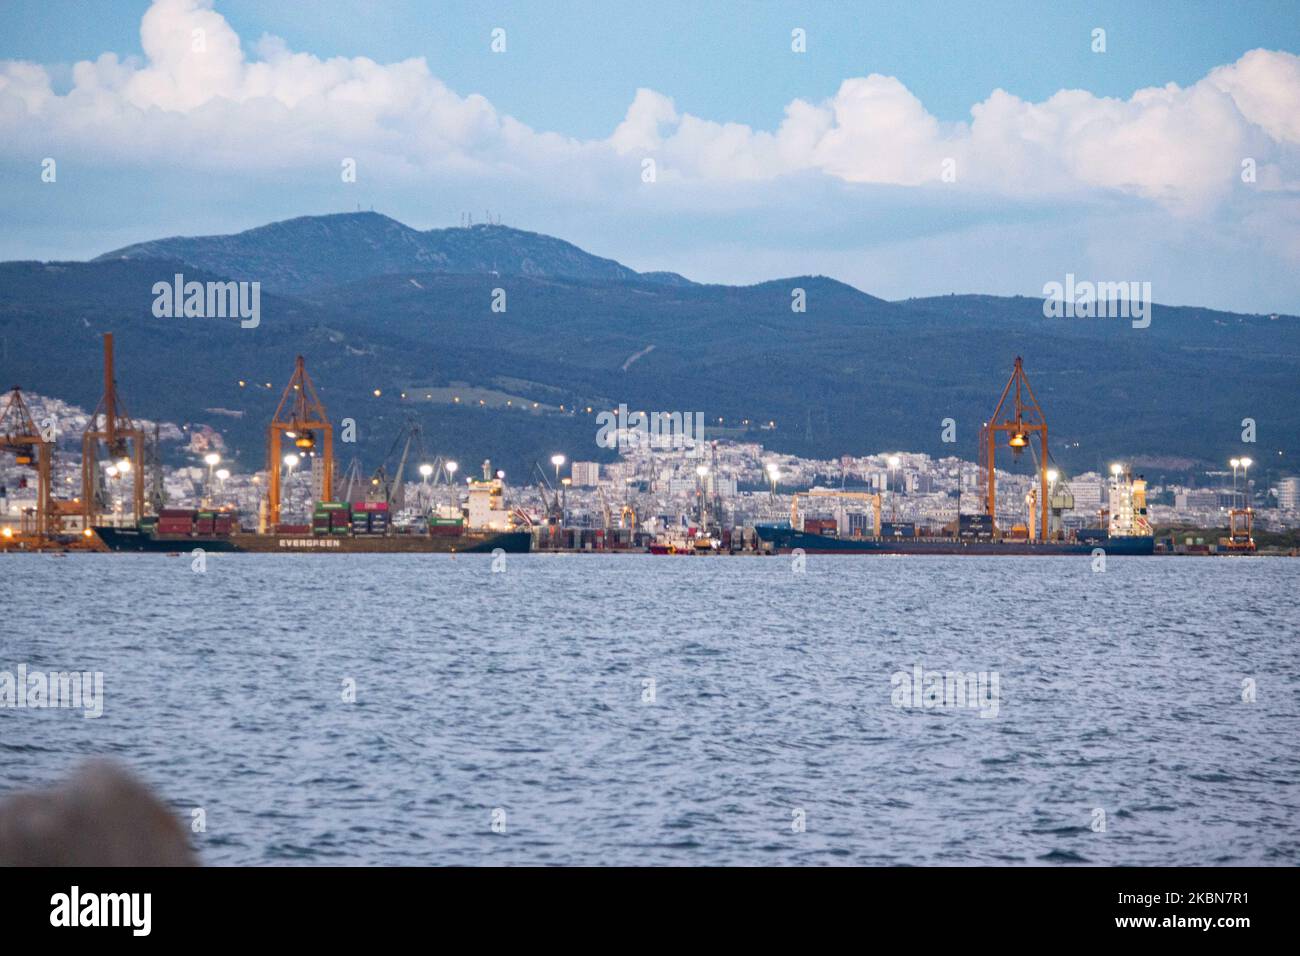 Der Hafen von Thessaloniki in Griechenland, wie mit Schiffen aus Kalochori mit Kränen beim Be- und Entladen von Frachtschiffern gesehen. Der Hafen wird von der Thessaloniki Port Authority OLTH betrieben und ist einer der größten in der Ägäis, mit einer freien Hafenzone, die als wichtiges Tor für Frachtgüter für den Balkan und Südosteuropa fungiert. Der griechische Seehafen verfügt über eine jährliche Verkehrskapazität von 16 Millionen Tonnen, den zweitgrößten Containerhafen Griechenlands nach Piräus und den größten in Mazedonien. Der Hafen verfügt über ein Container Terminal mit einer Speicherkapazität von 4696 TEU Bodenslots, Cargo Stockfoto